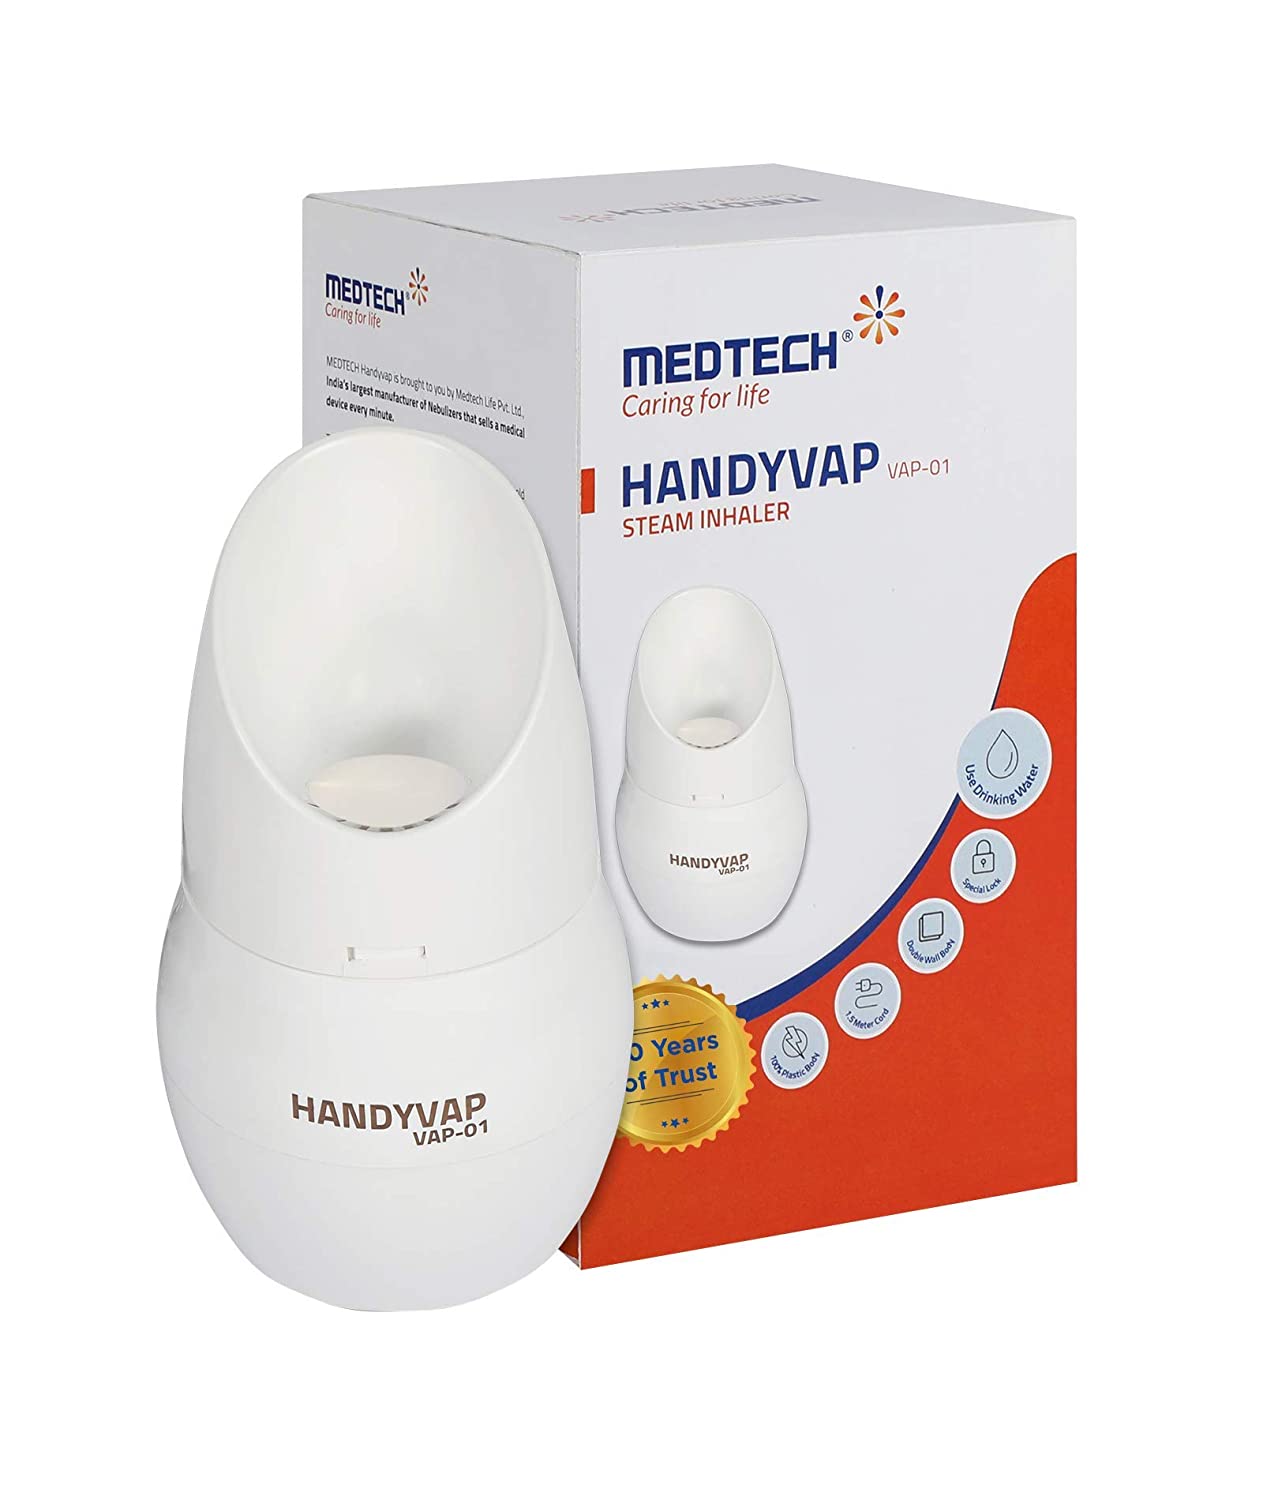 Medtech Steam Inhaler, Handyvap, VAP 01